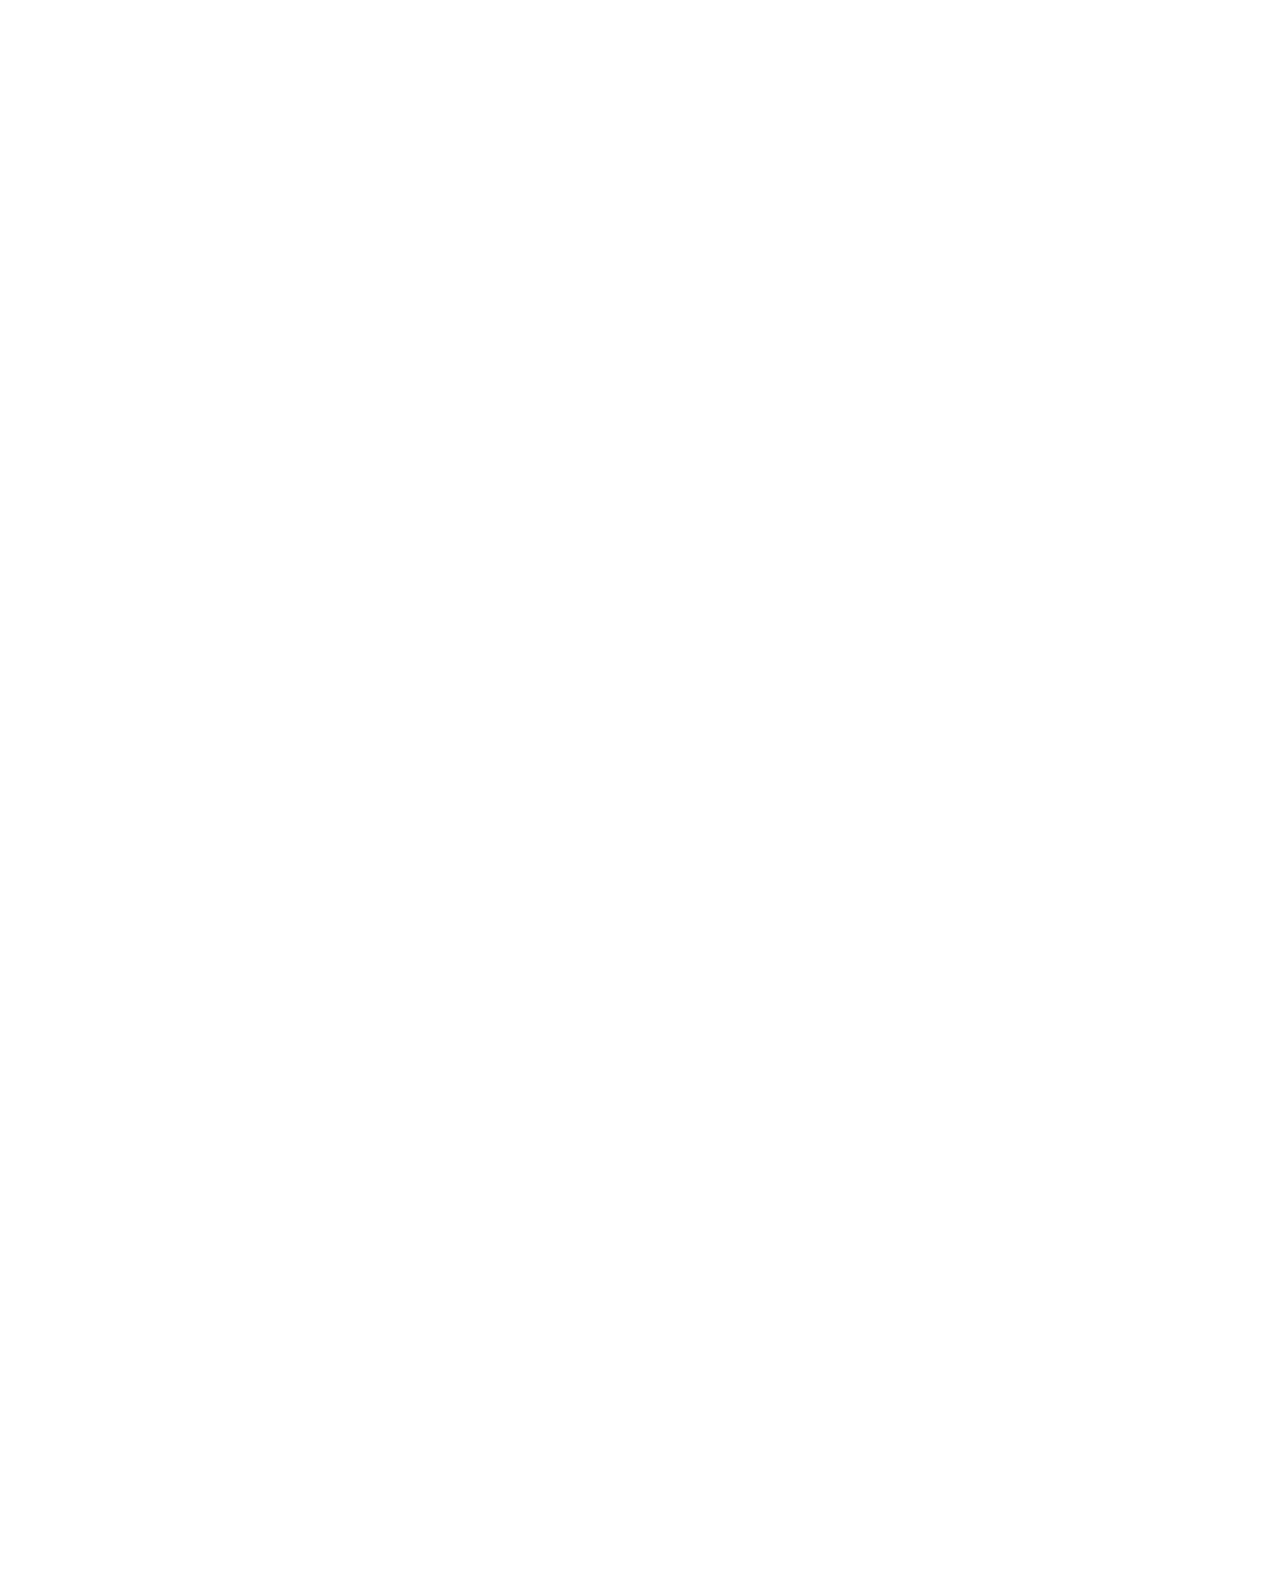 Bureau Veritas Logo Black and White (2) – Brands Logos